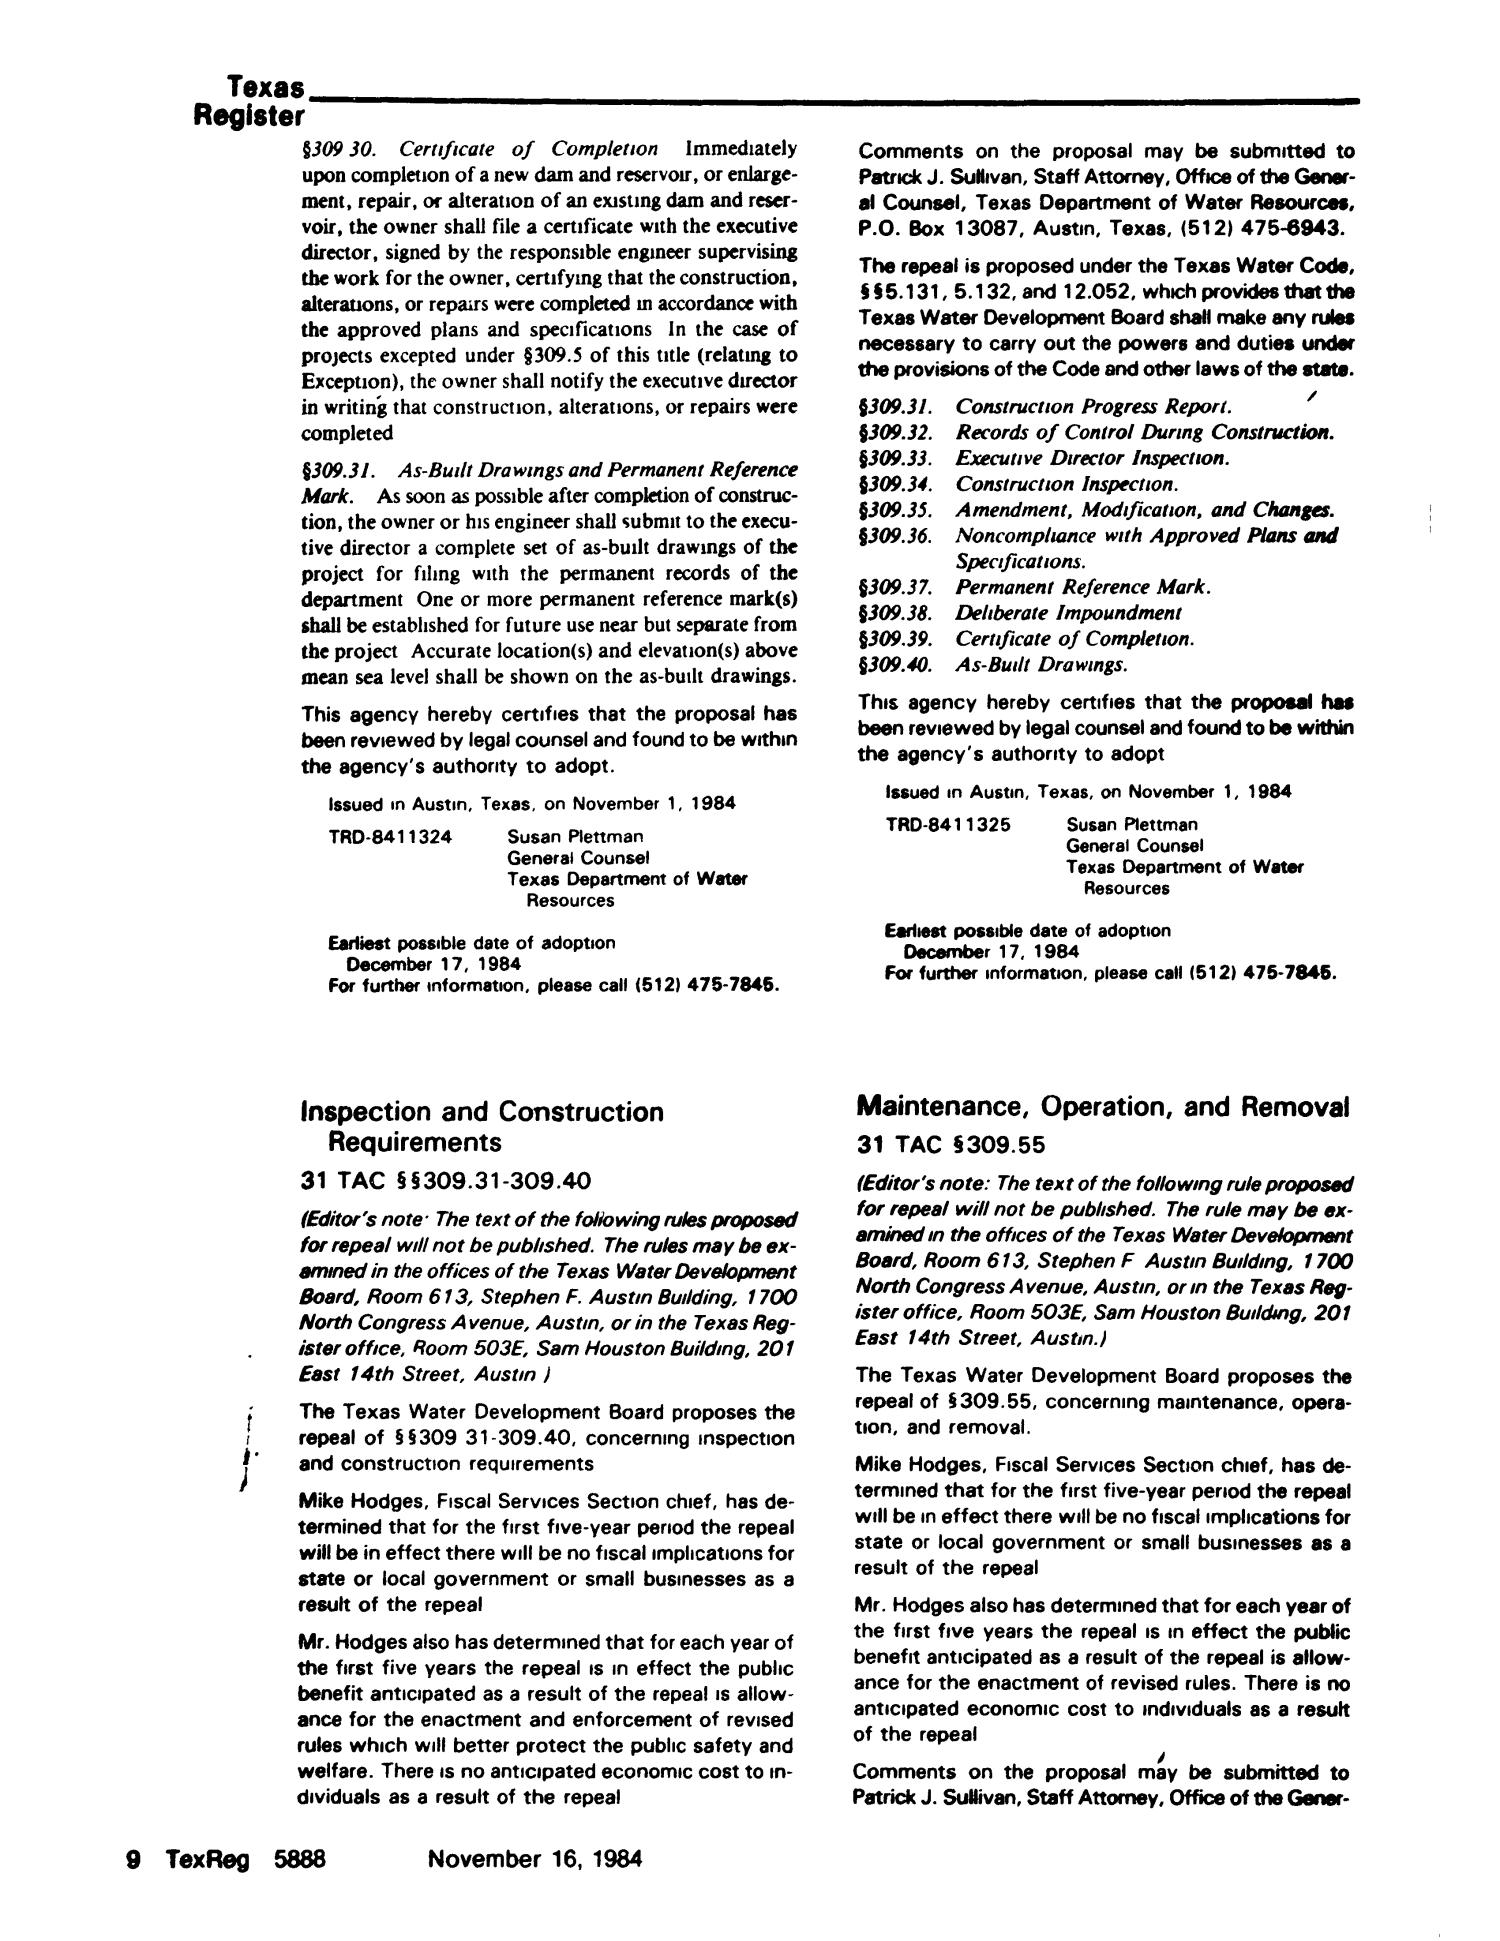 Texas Register, Volume 9, Number 86, Pages 5863 - 5954, November 16, 1984
                                                
                                                    5888
                                                